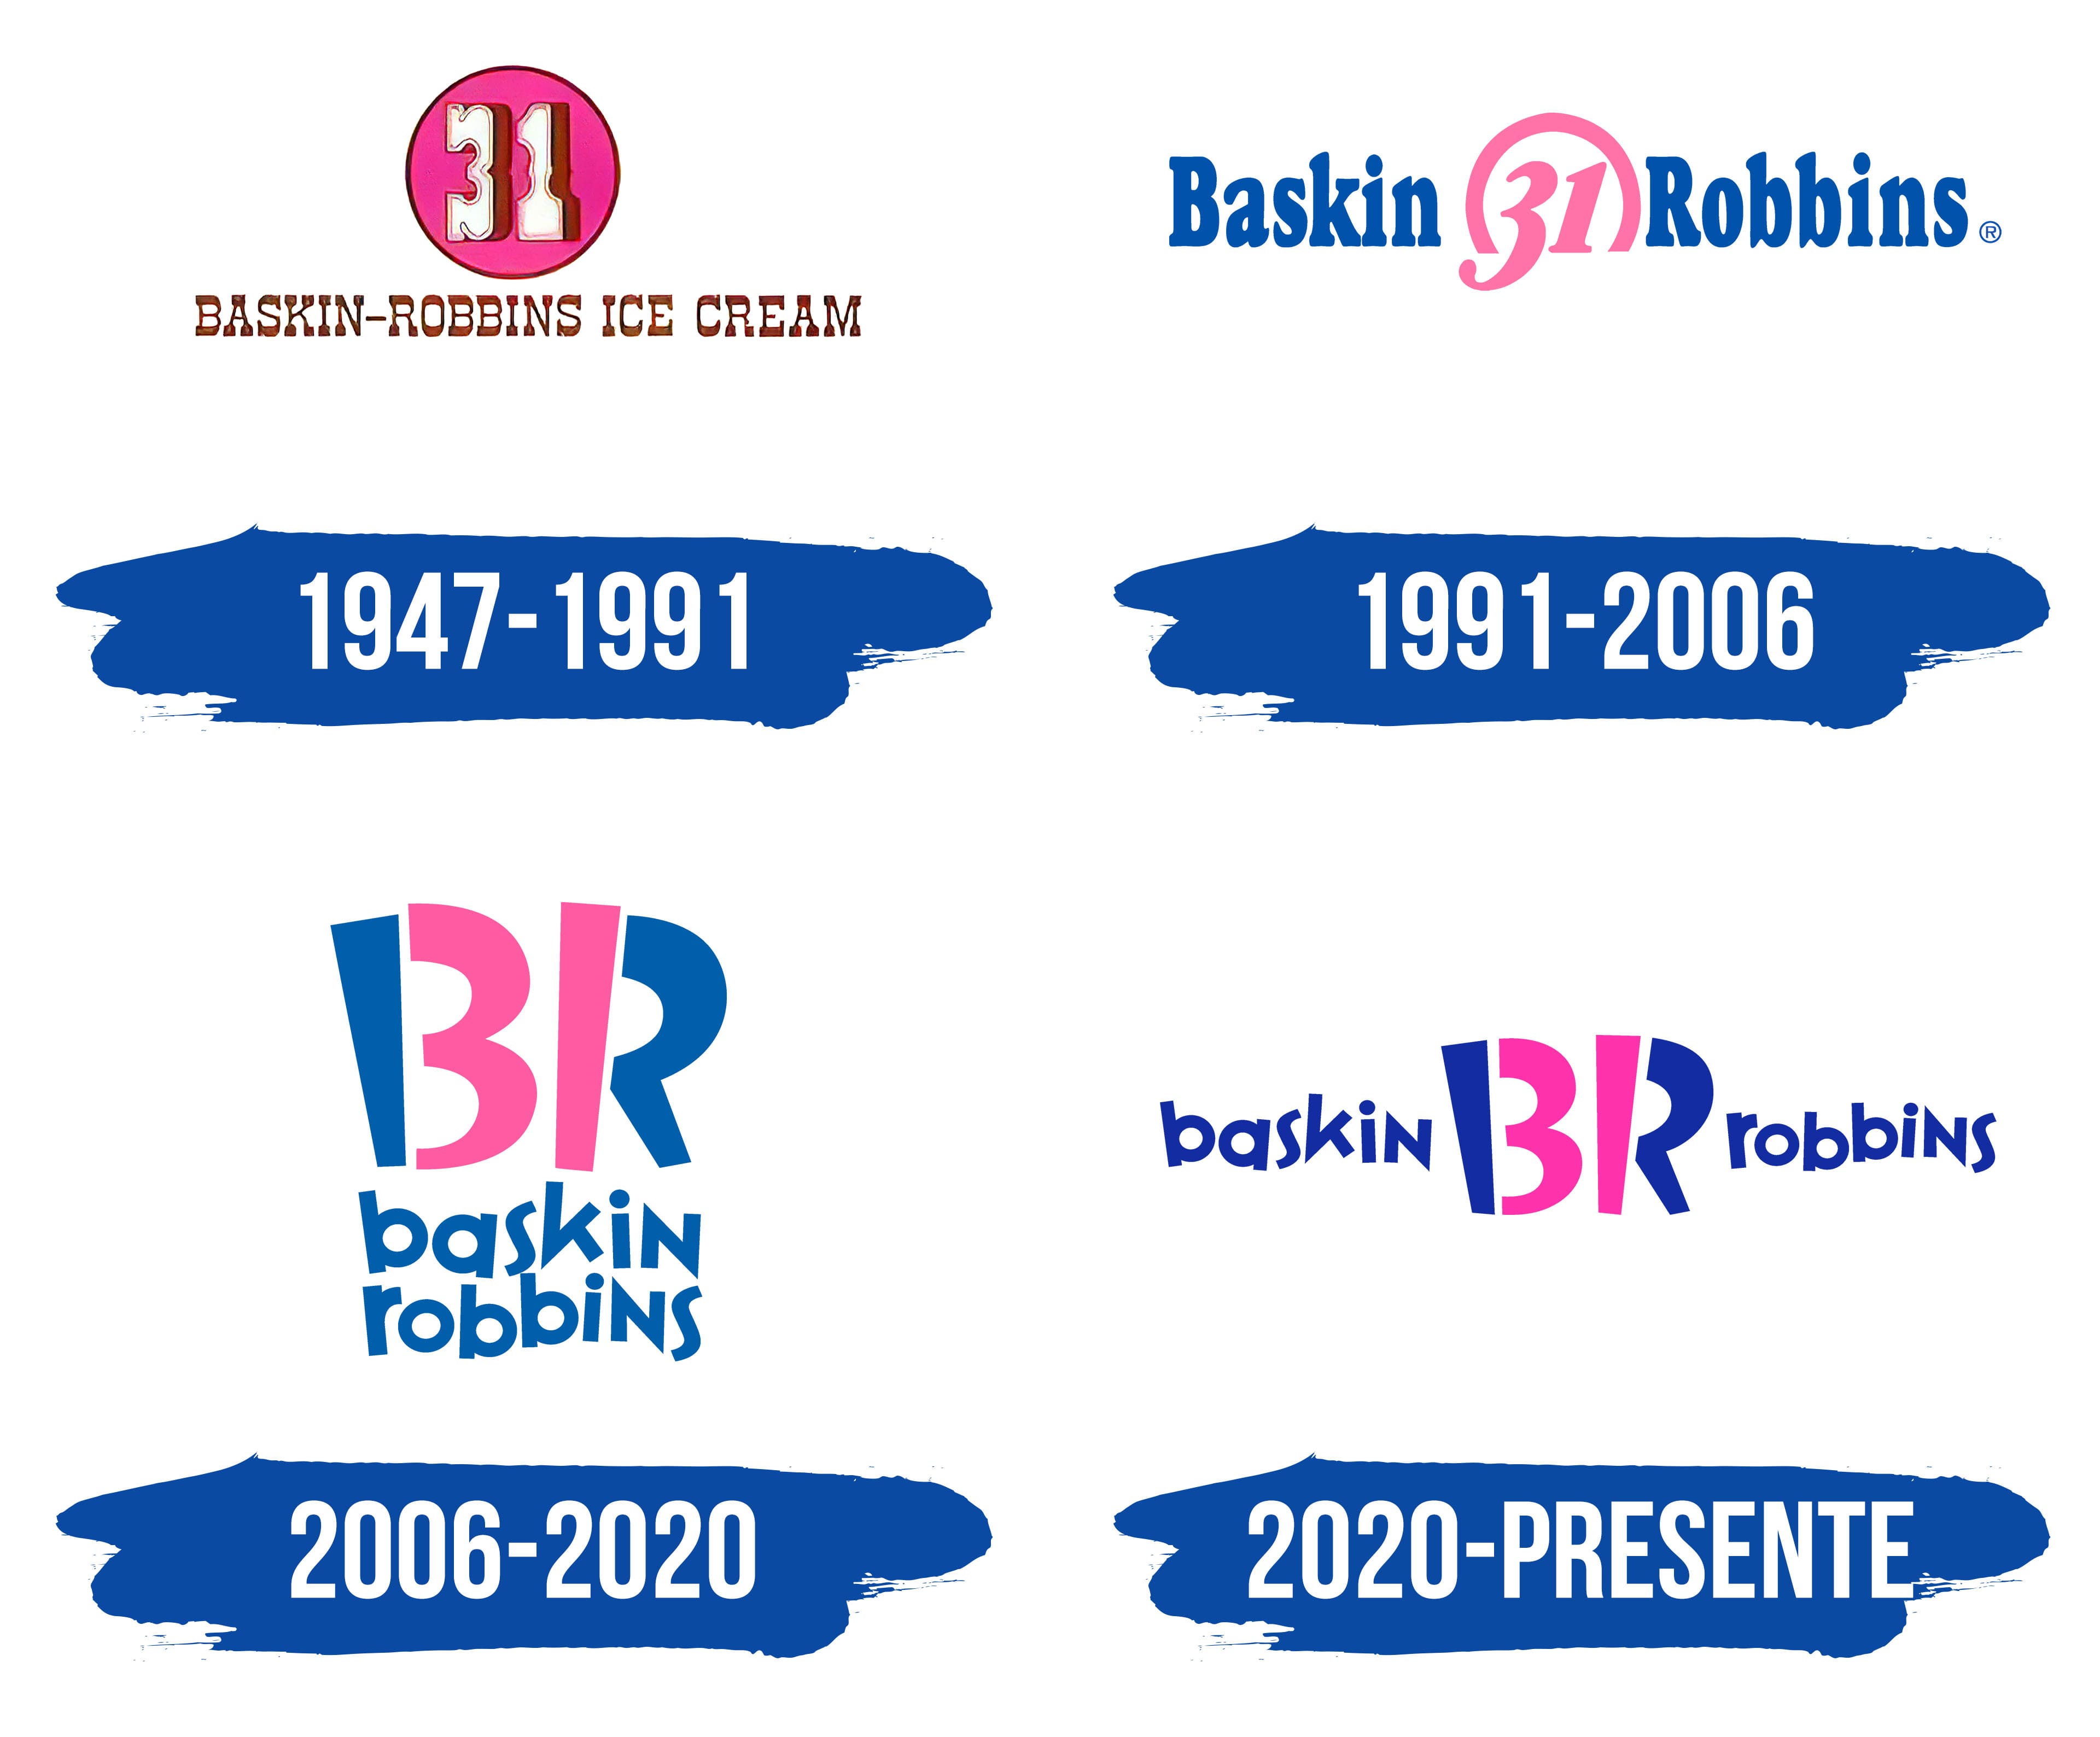 Logo De Baskin Robbins La Historia Y El Significado Del Logotipo La ...